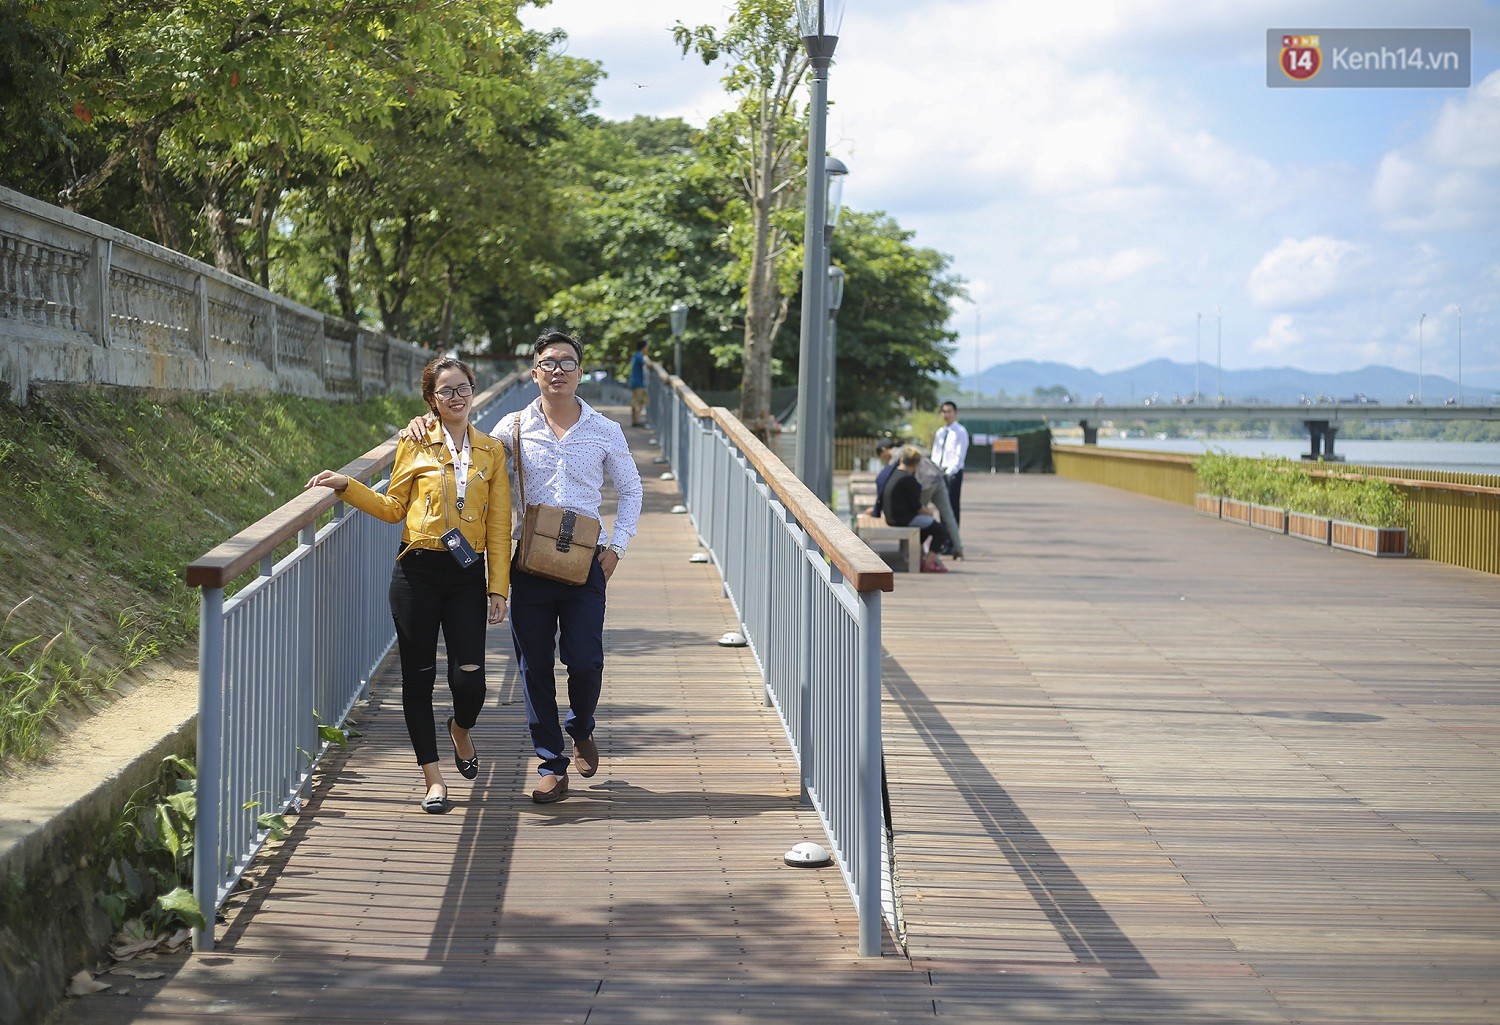 Cầu đi bộ lát gỗ lim 64 tỷ trên sông Hương trở thành địa điểm hot nhất ở Huế dù chưa khánh thành - Ảnh 10.